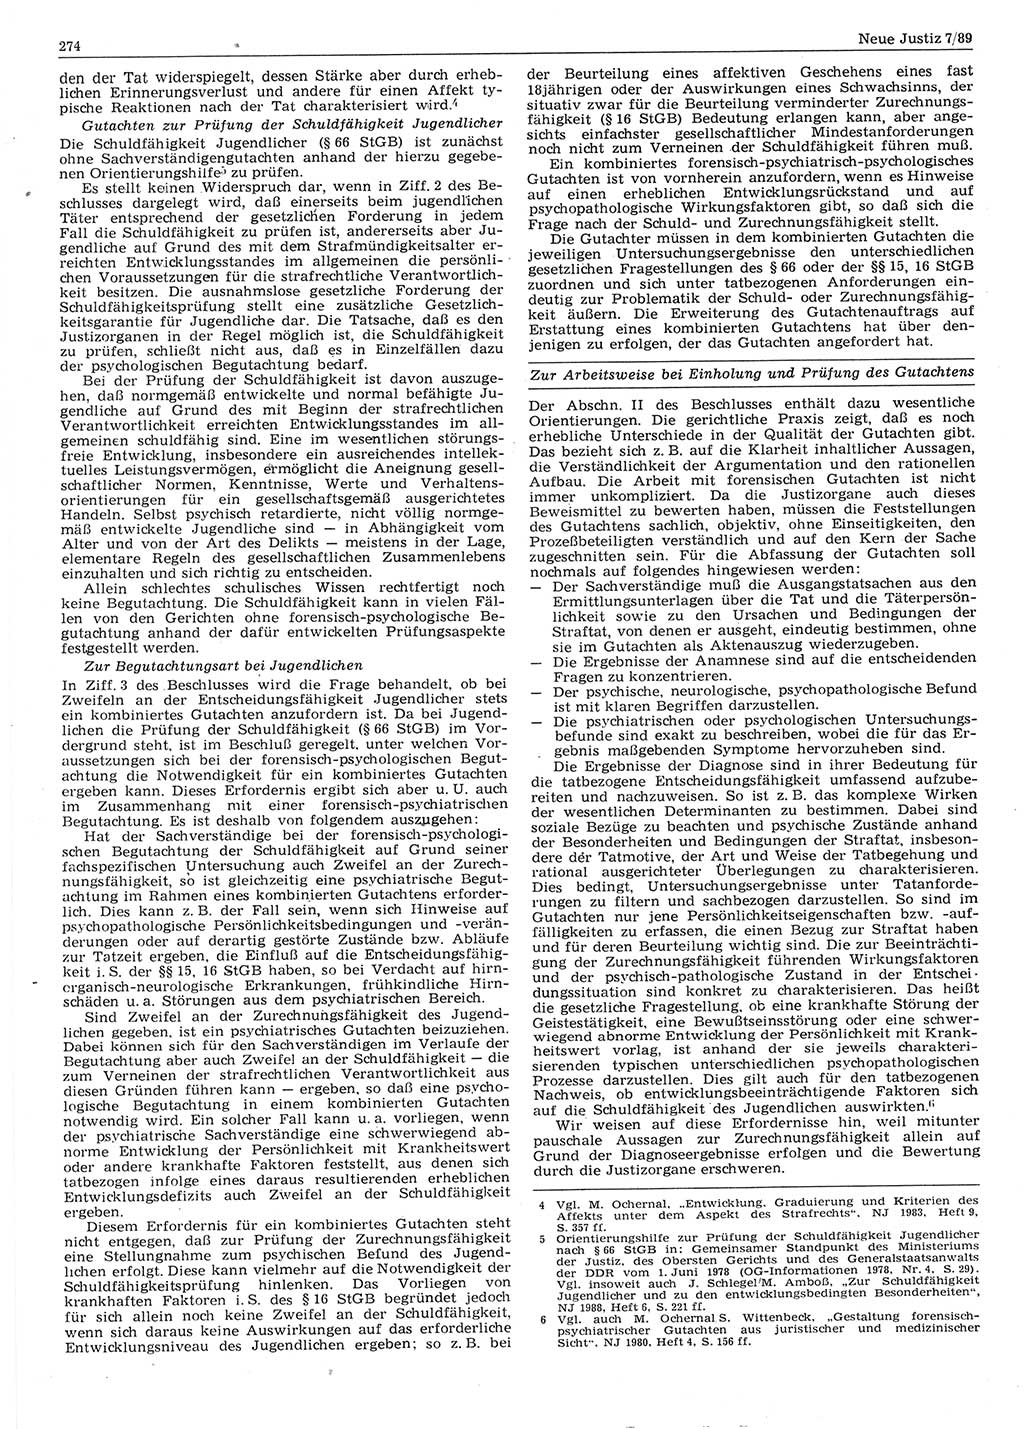 Neue Justiz (NJ), Zeitschrift für sozialistisches Recht und Gesetzlichkeit [Deutsche Demokratische Republik (DDR)], 43. Jahrgang 1989, Seite 274 (NJ DDR 1989, S. 274)